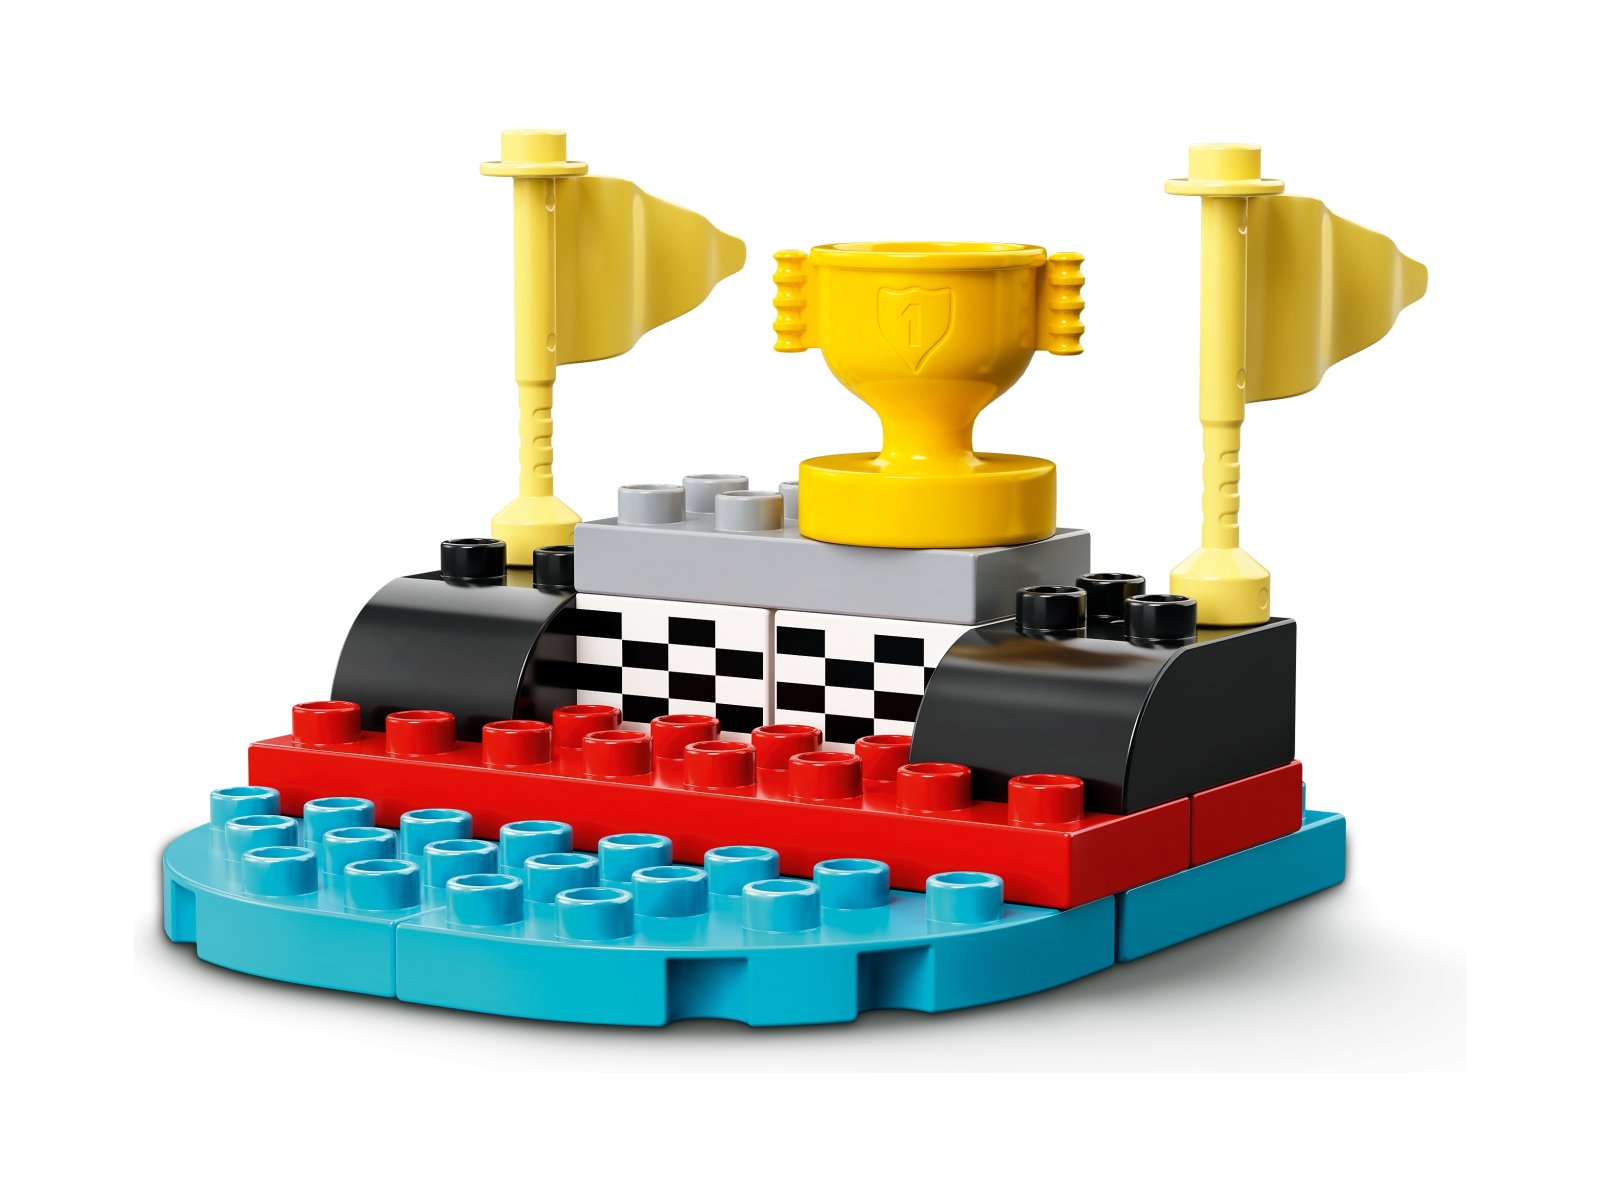 LEGO 10947 Samochody wyścigowe